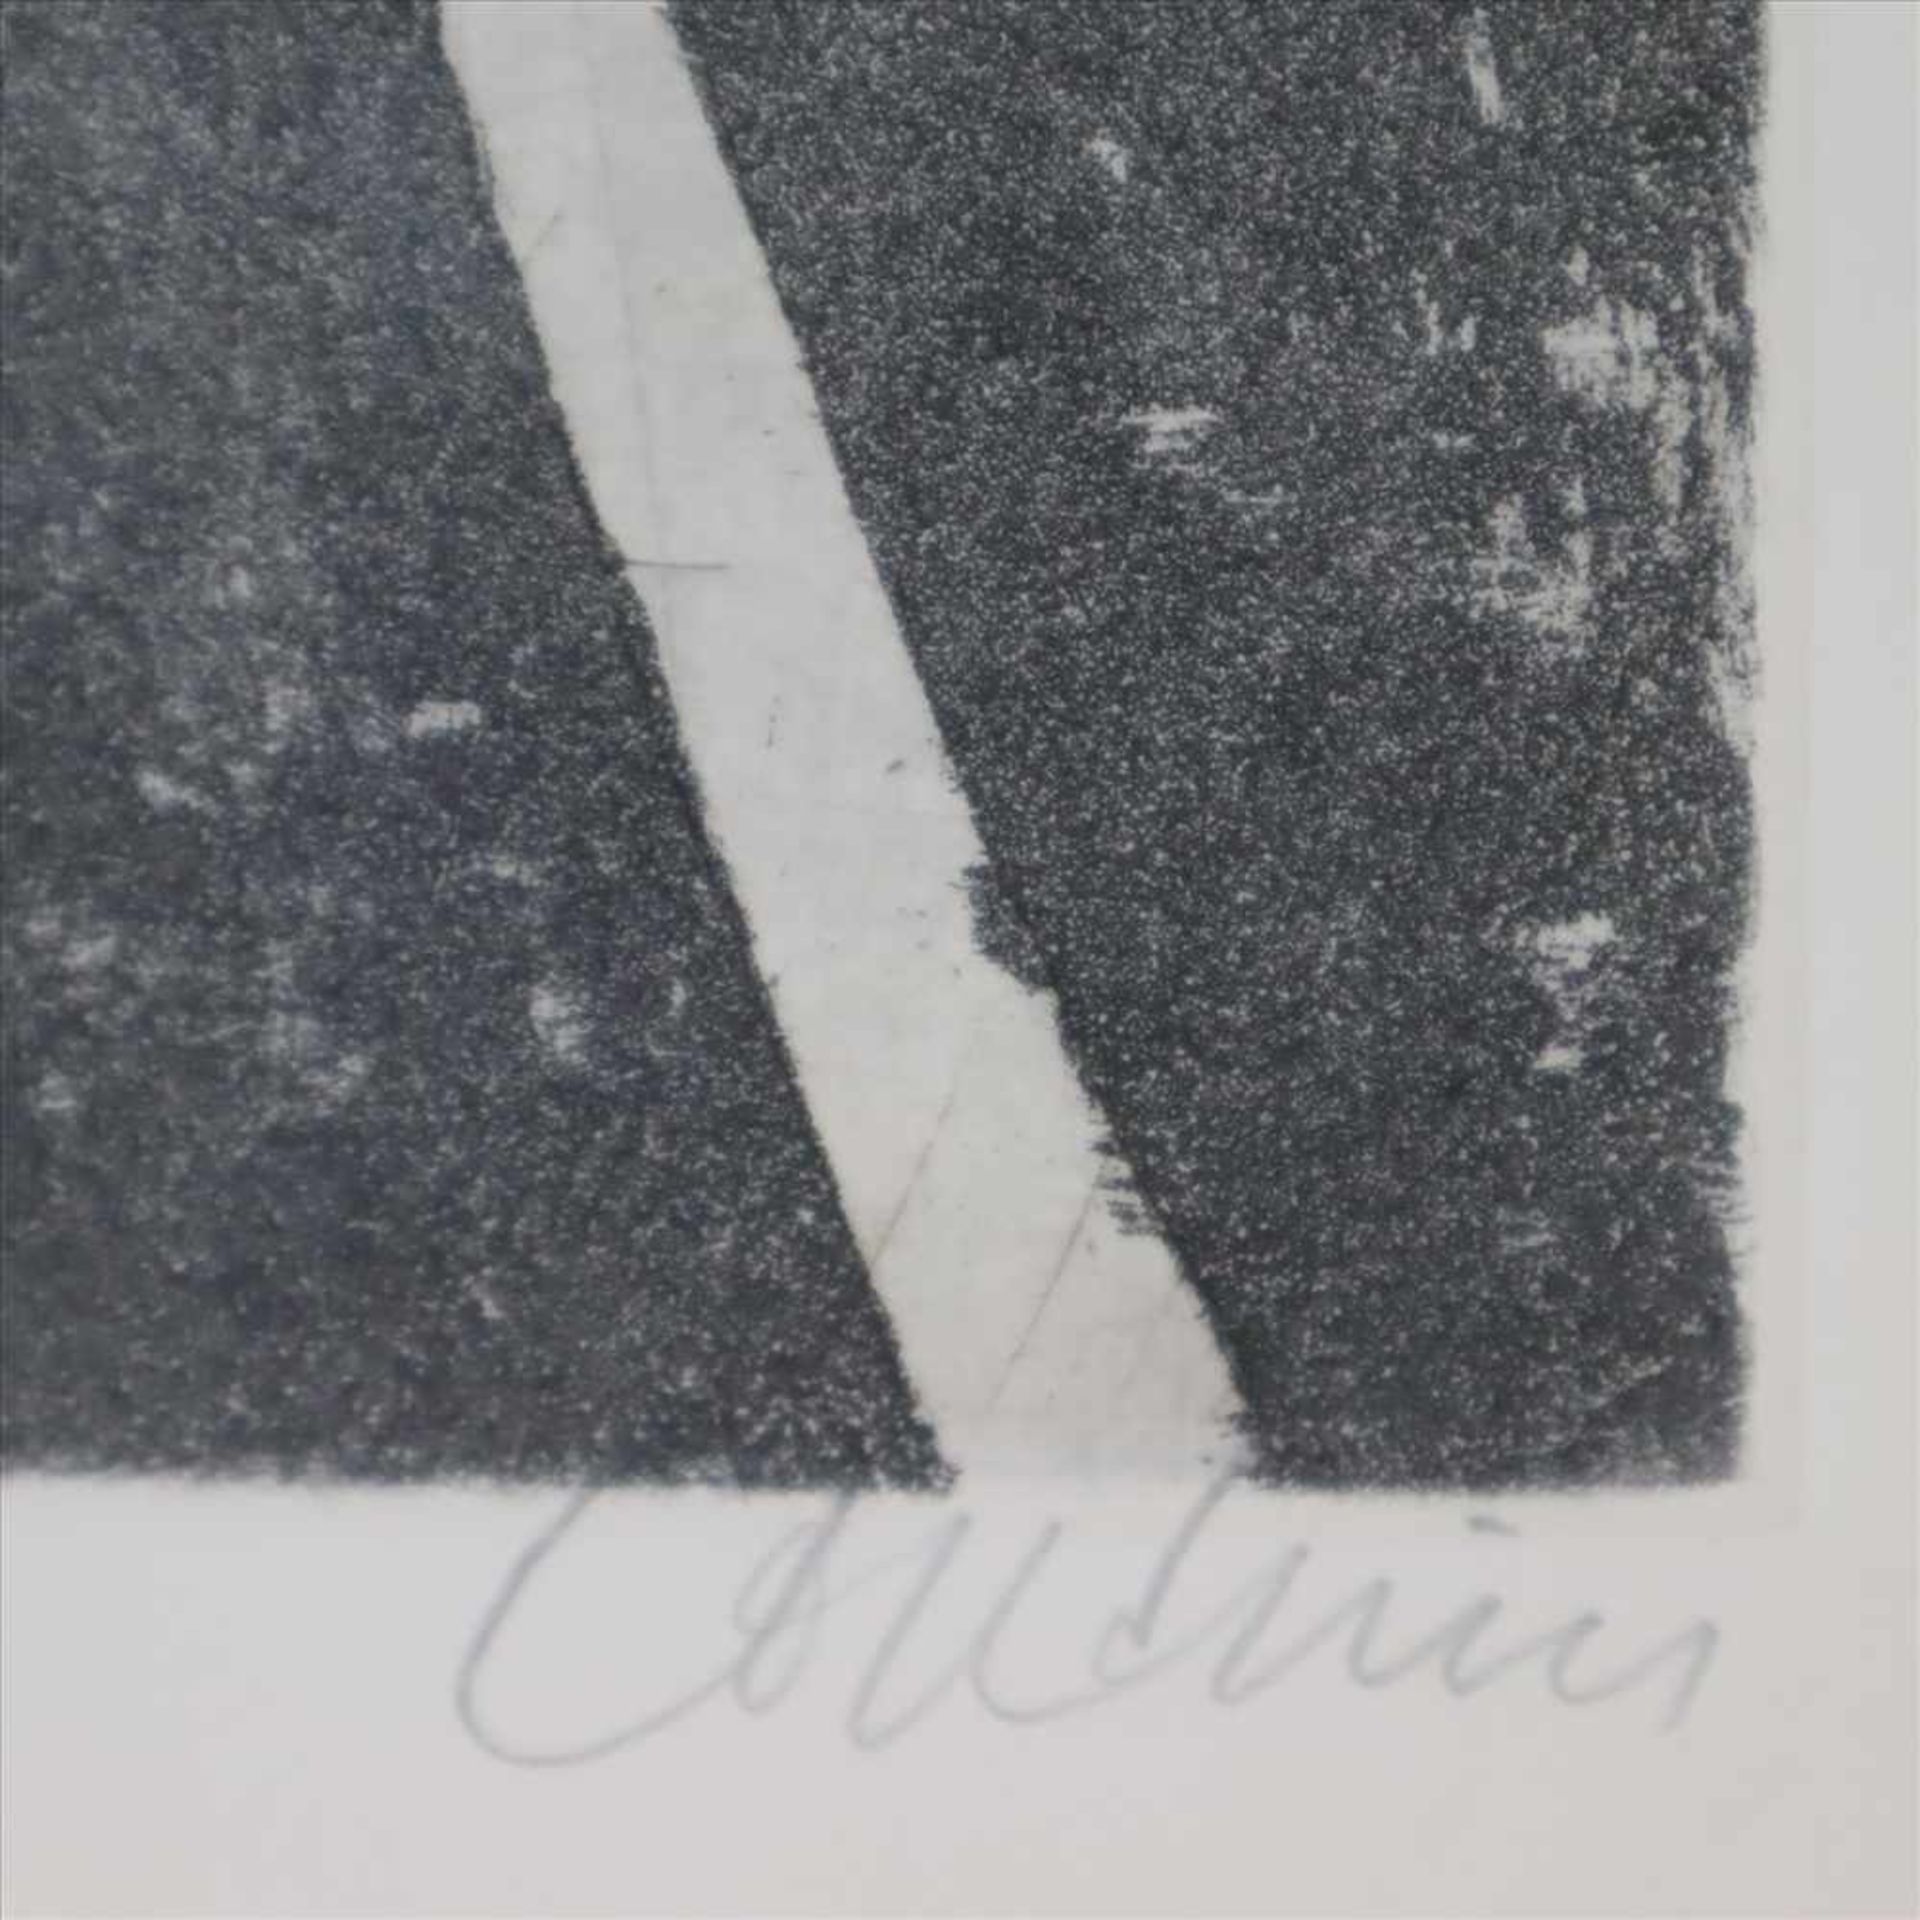 Coudrain, Brigitte (1934, Paris) - Pflanzenkomposition, Farbradierung, unten rechts in Bleistift - Bild 3 aus 3